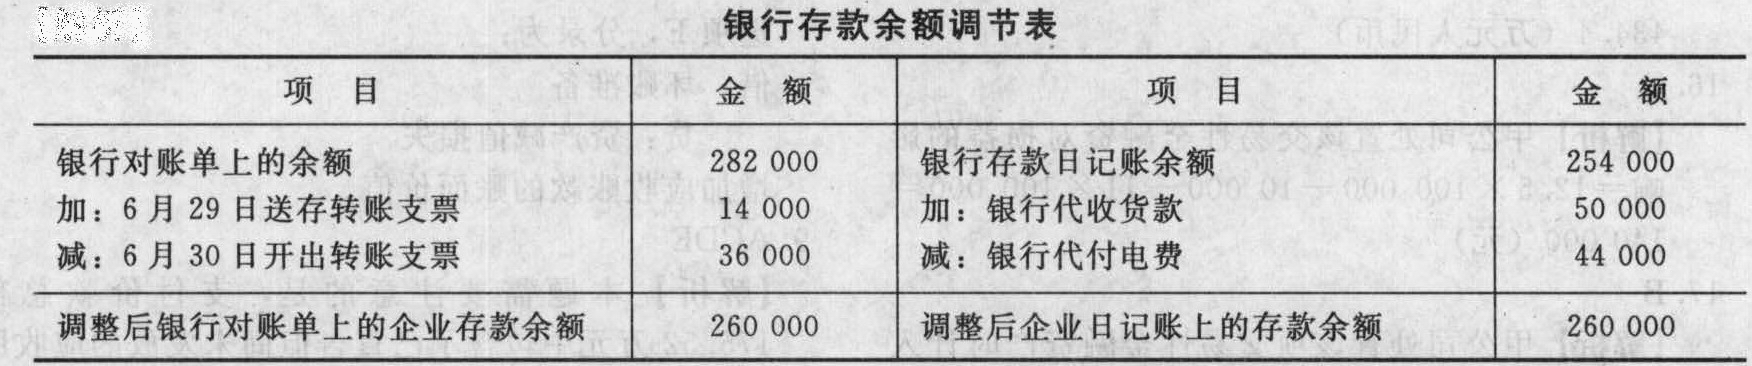 甲公司2010年6月30日银行存款日记账账面余额是25400...